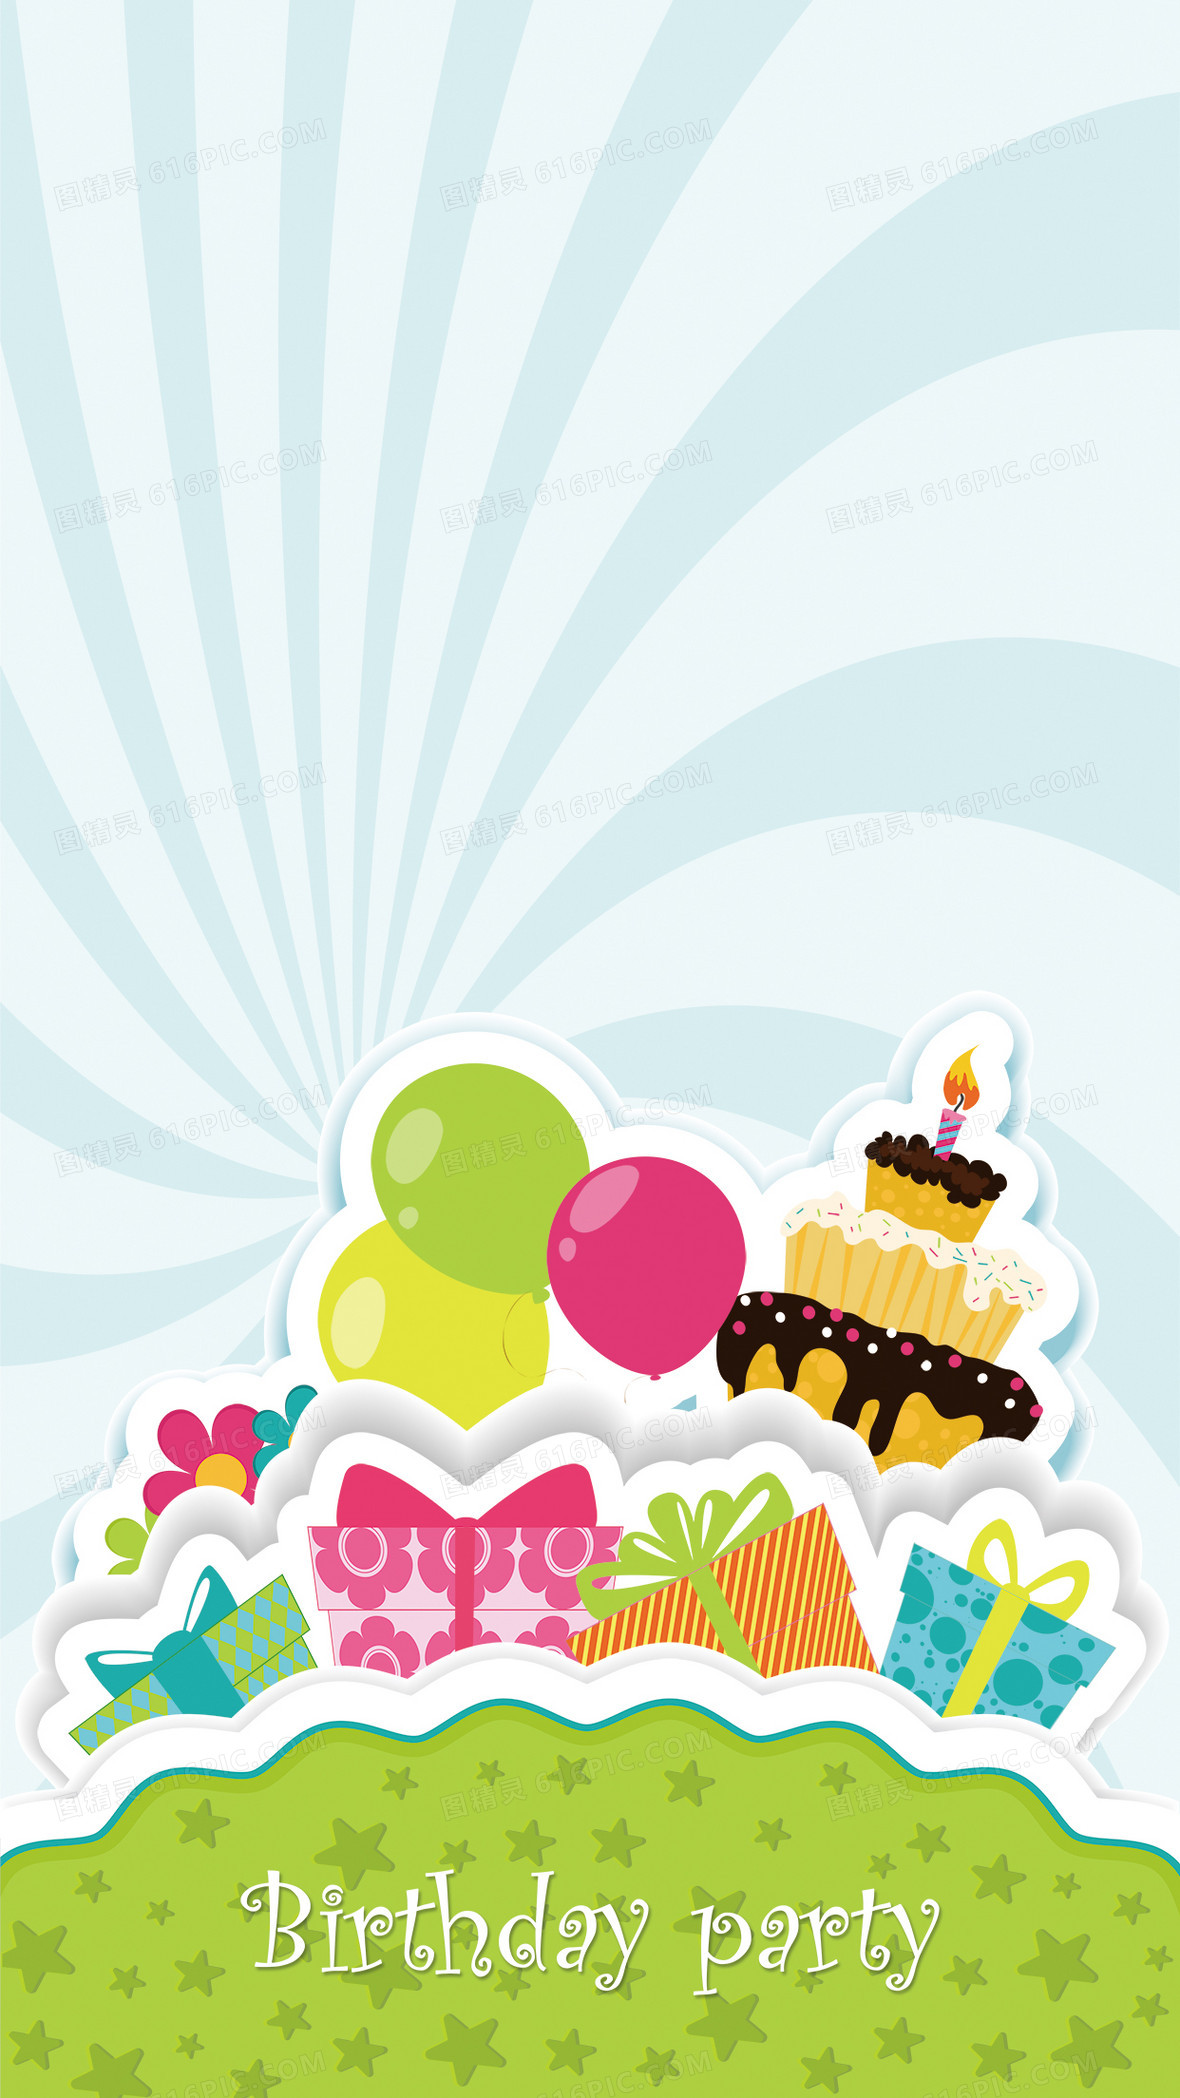 关键词:             生日生日祝福海报背景生日快乐气球蛋糕